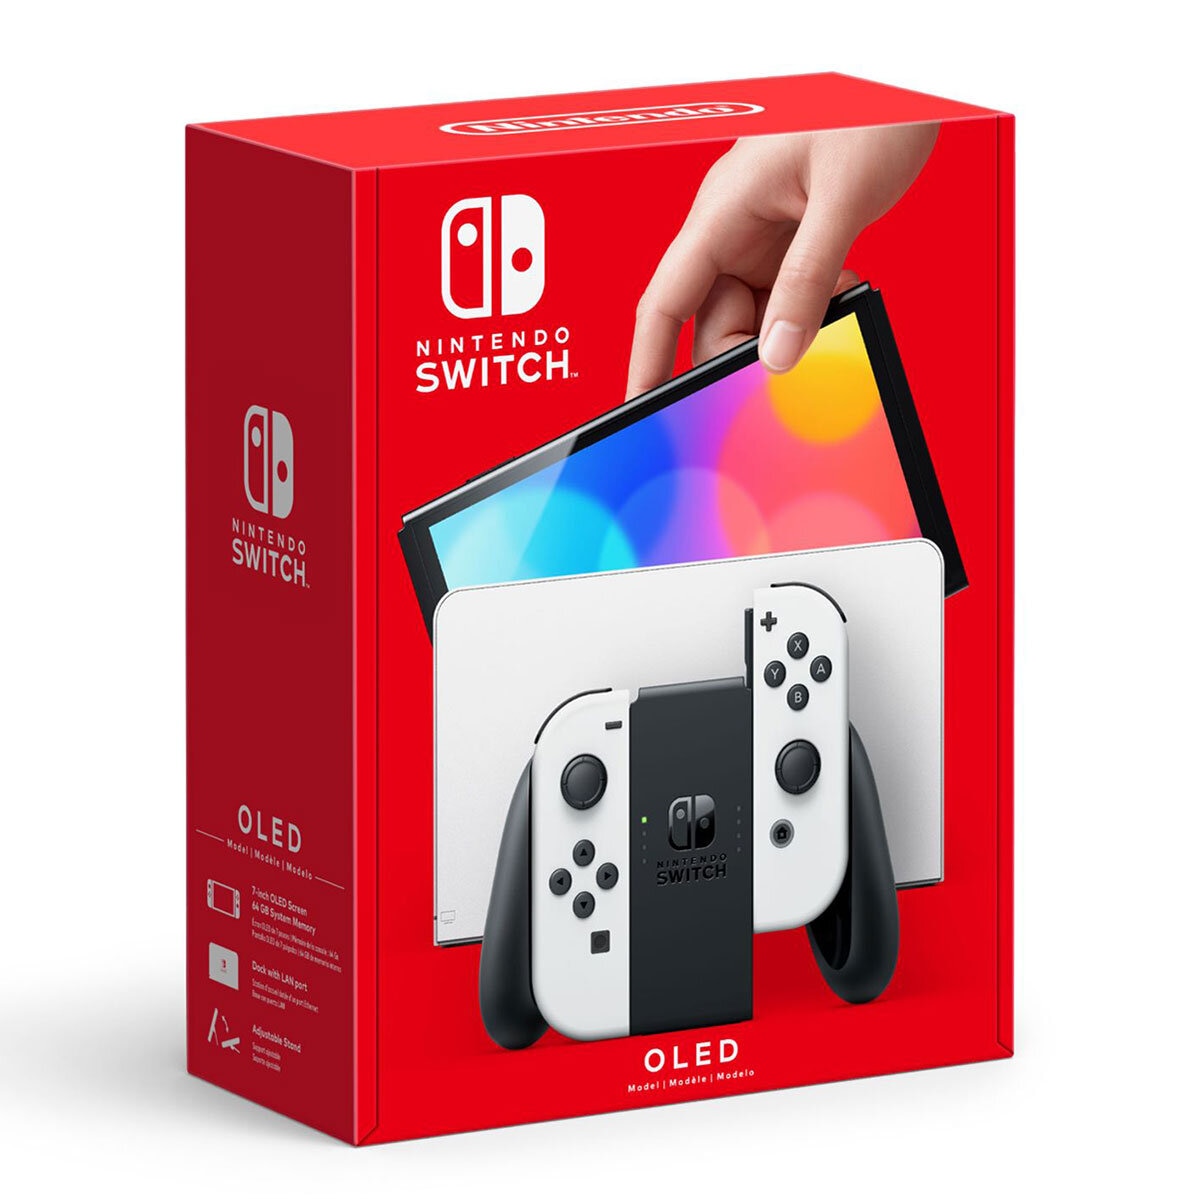 Nintendo Switch™ Modelo OLED w/ White Joy-Con